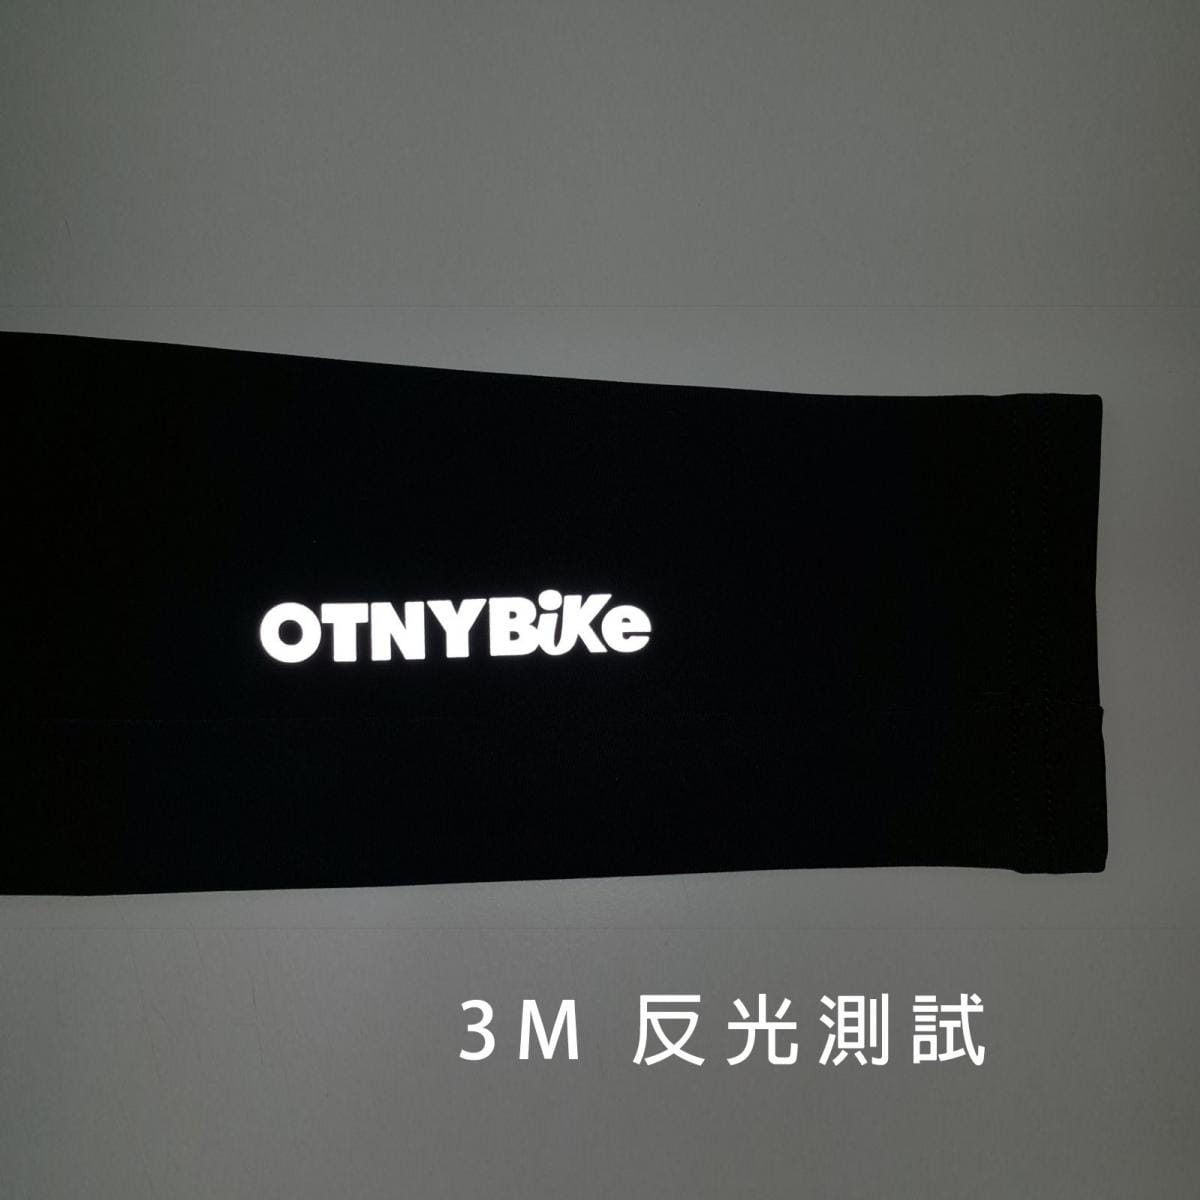 【OTNYBike】ONTYBike 抗UV酷涼腿套 3